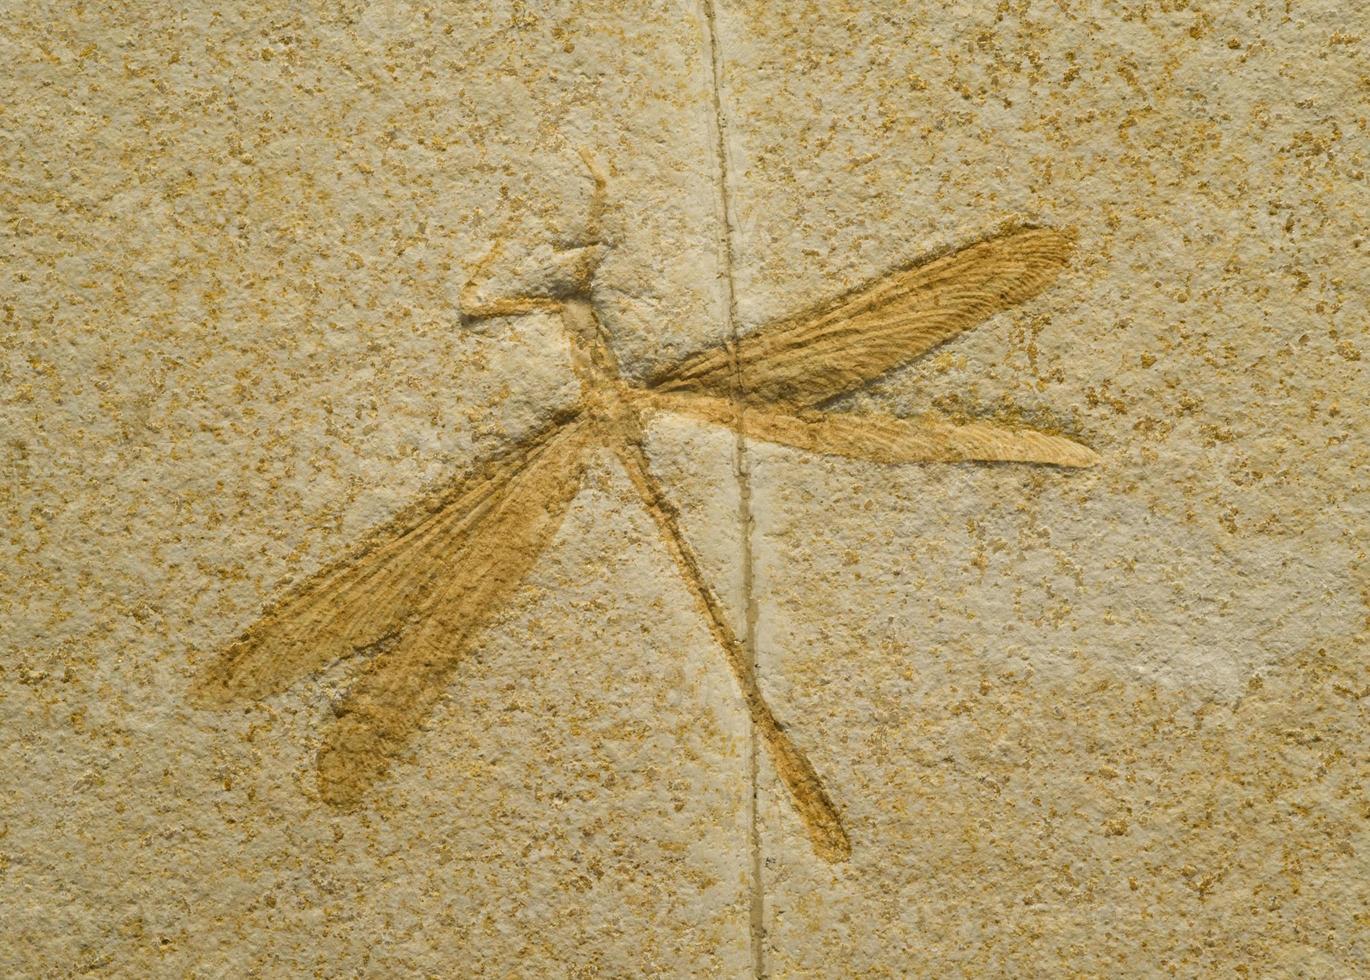 Fósil de una libélula. foto